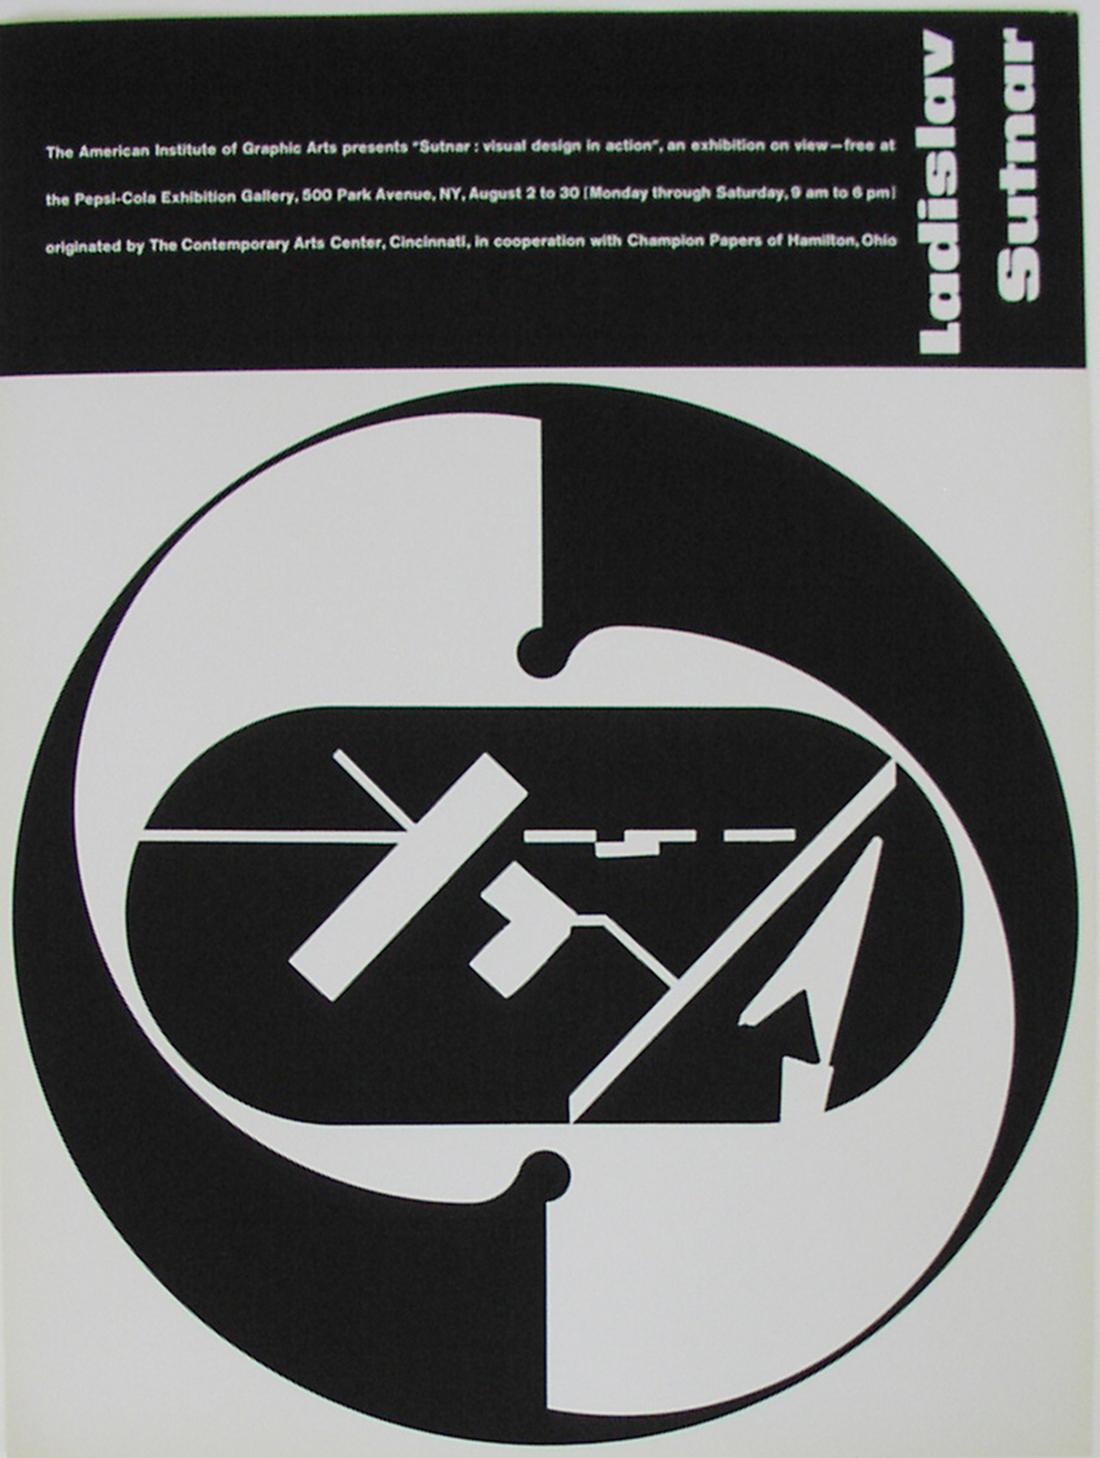 Abstract Print  Sutnar, Ladislav - Affiche conçue par Sutnar pour l'exposition Sutnar : le design visuel en action.